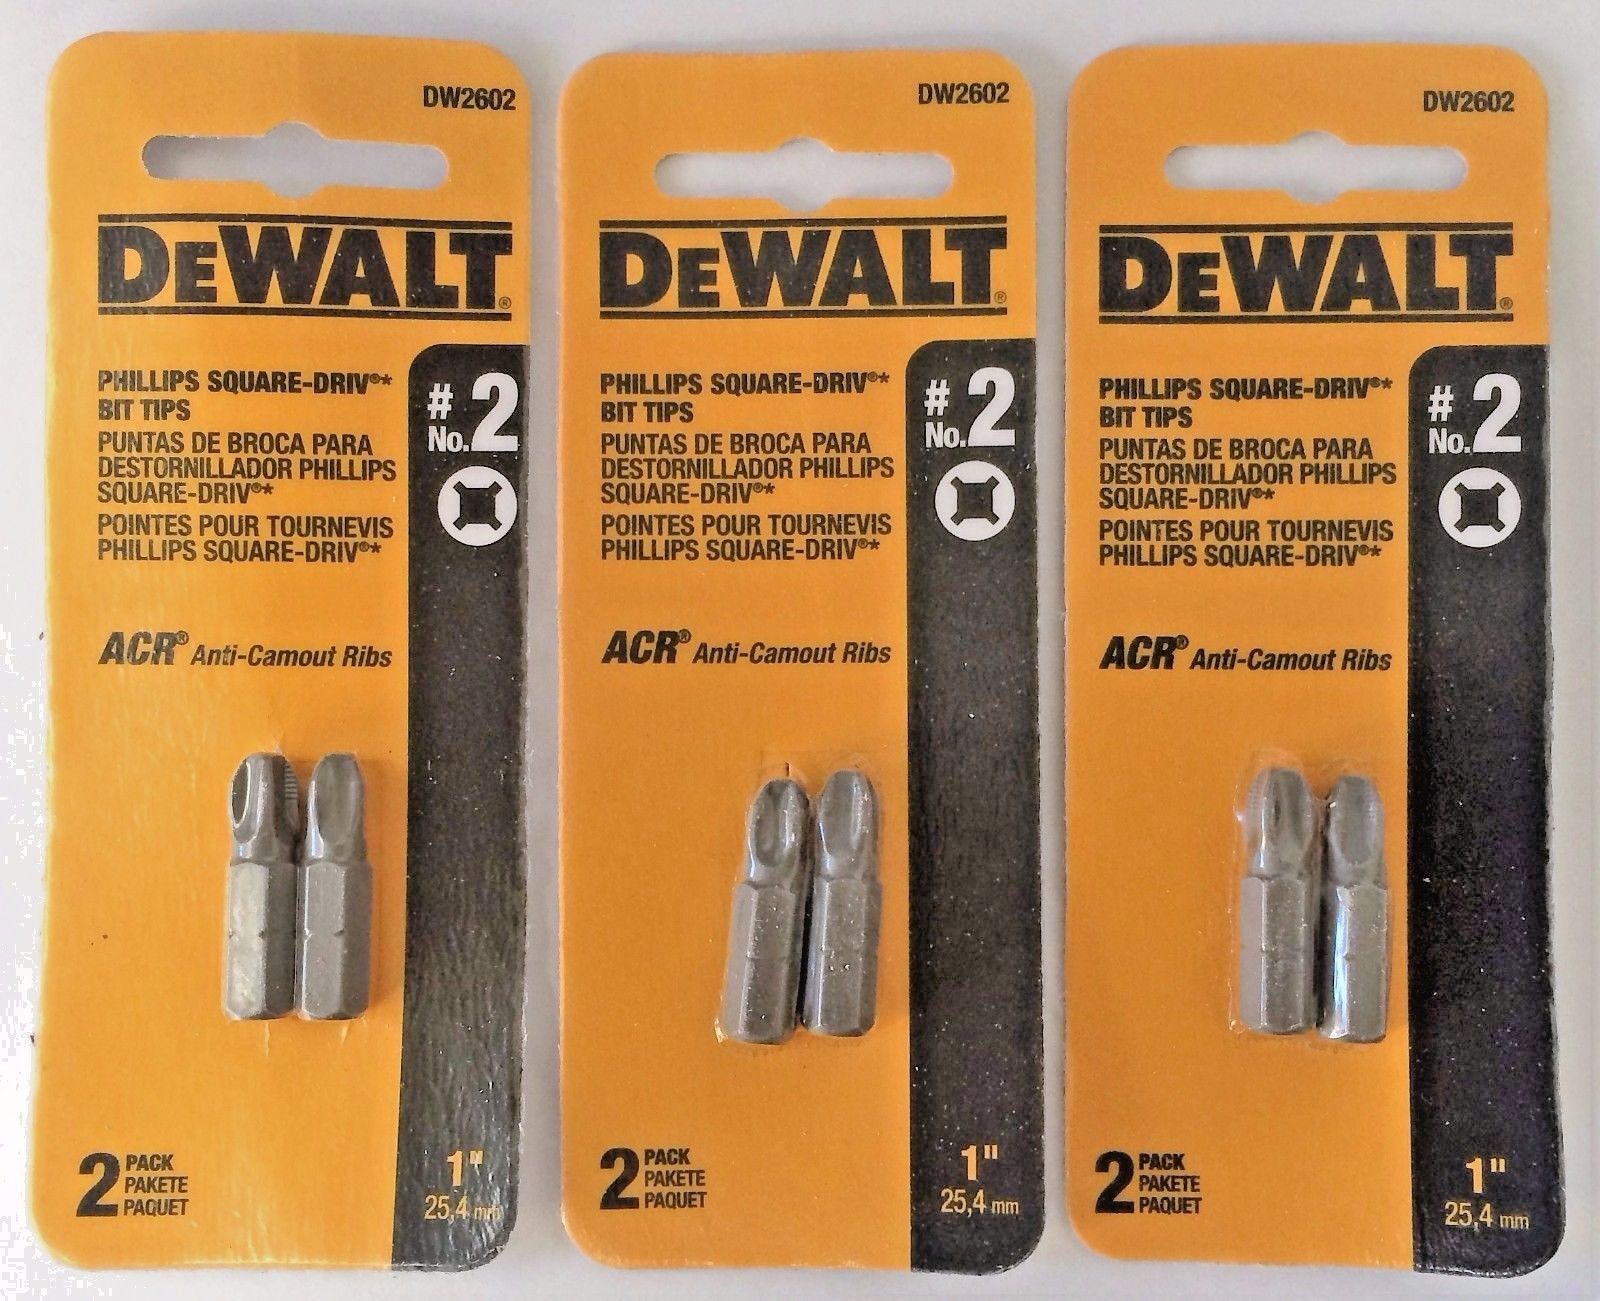 Dewalt DW2602 #2 Phillips Square Drive Bit Tip 3 (2 Packs)